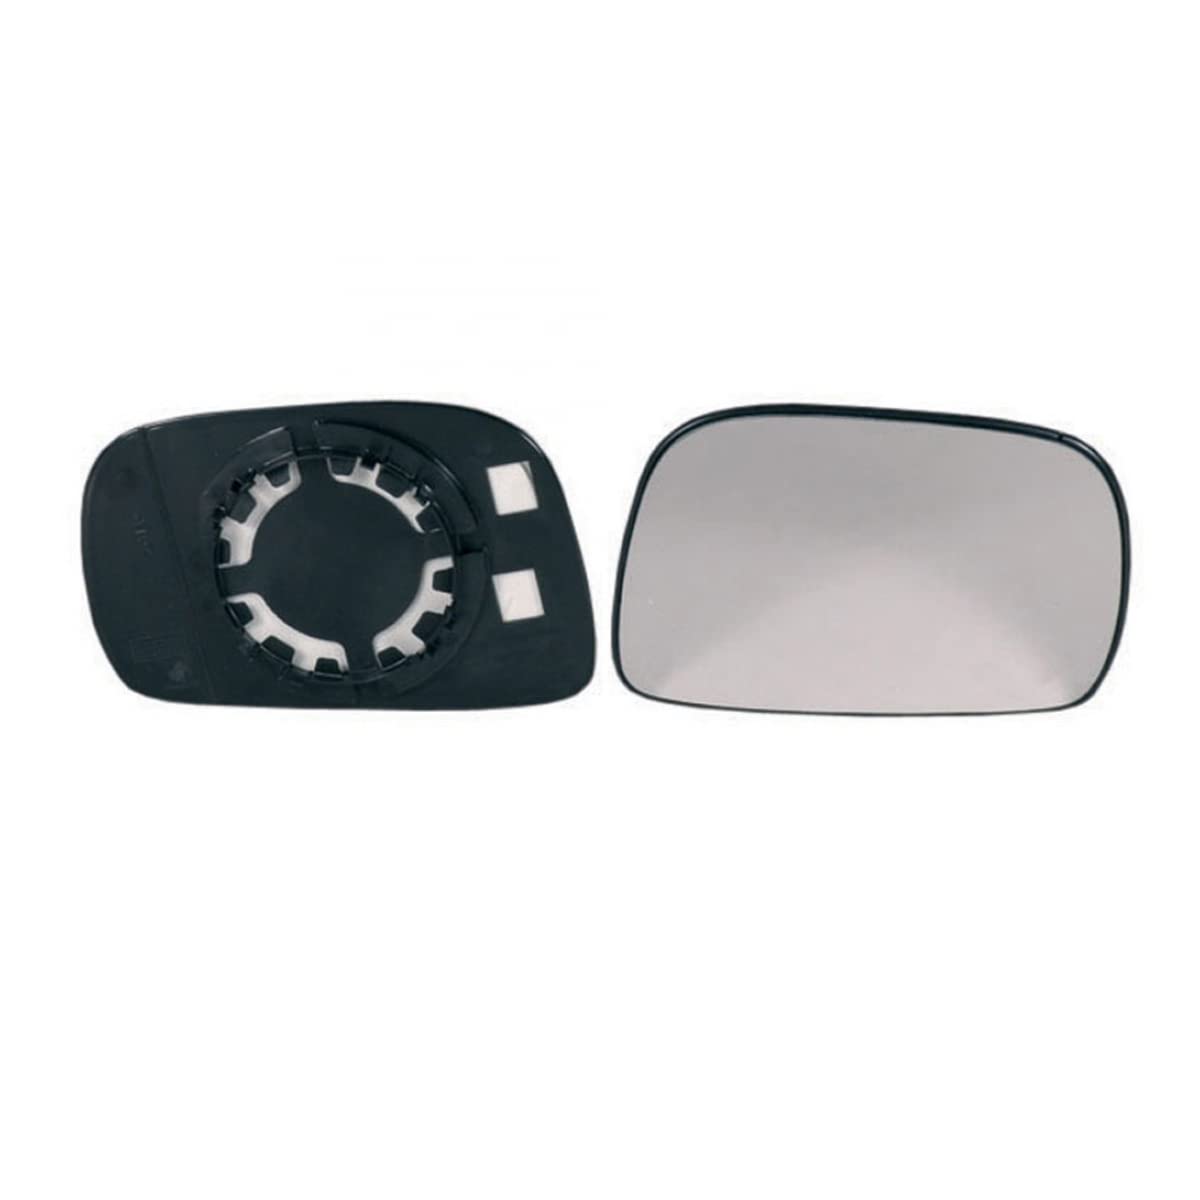 DM Autoteile 144270 Spiegelglas Außenspiegel rechts konvex kompatibel für Opel Agila A H00 Suzuki WAGON R+ MM von DM Autoteile